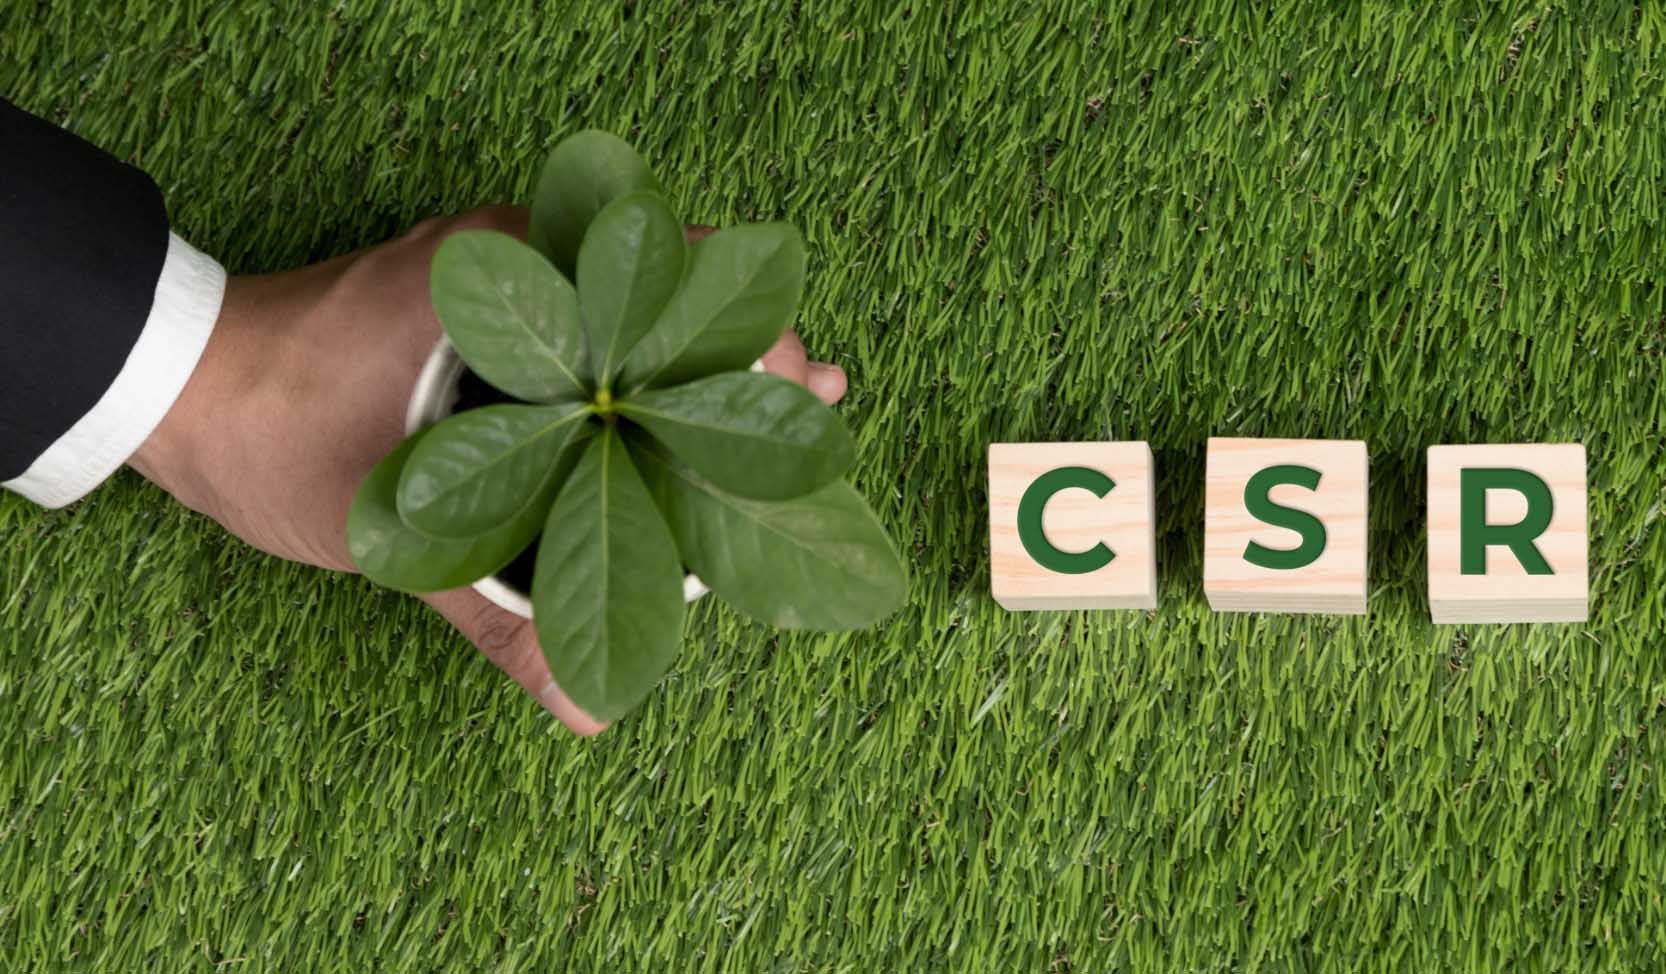 "Eine Hand hält einen kleinen Baum neben CSR-Würfeln in einem grünen Hintergrund".  